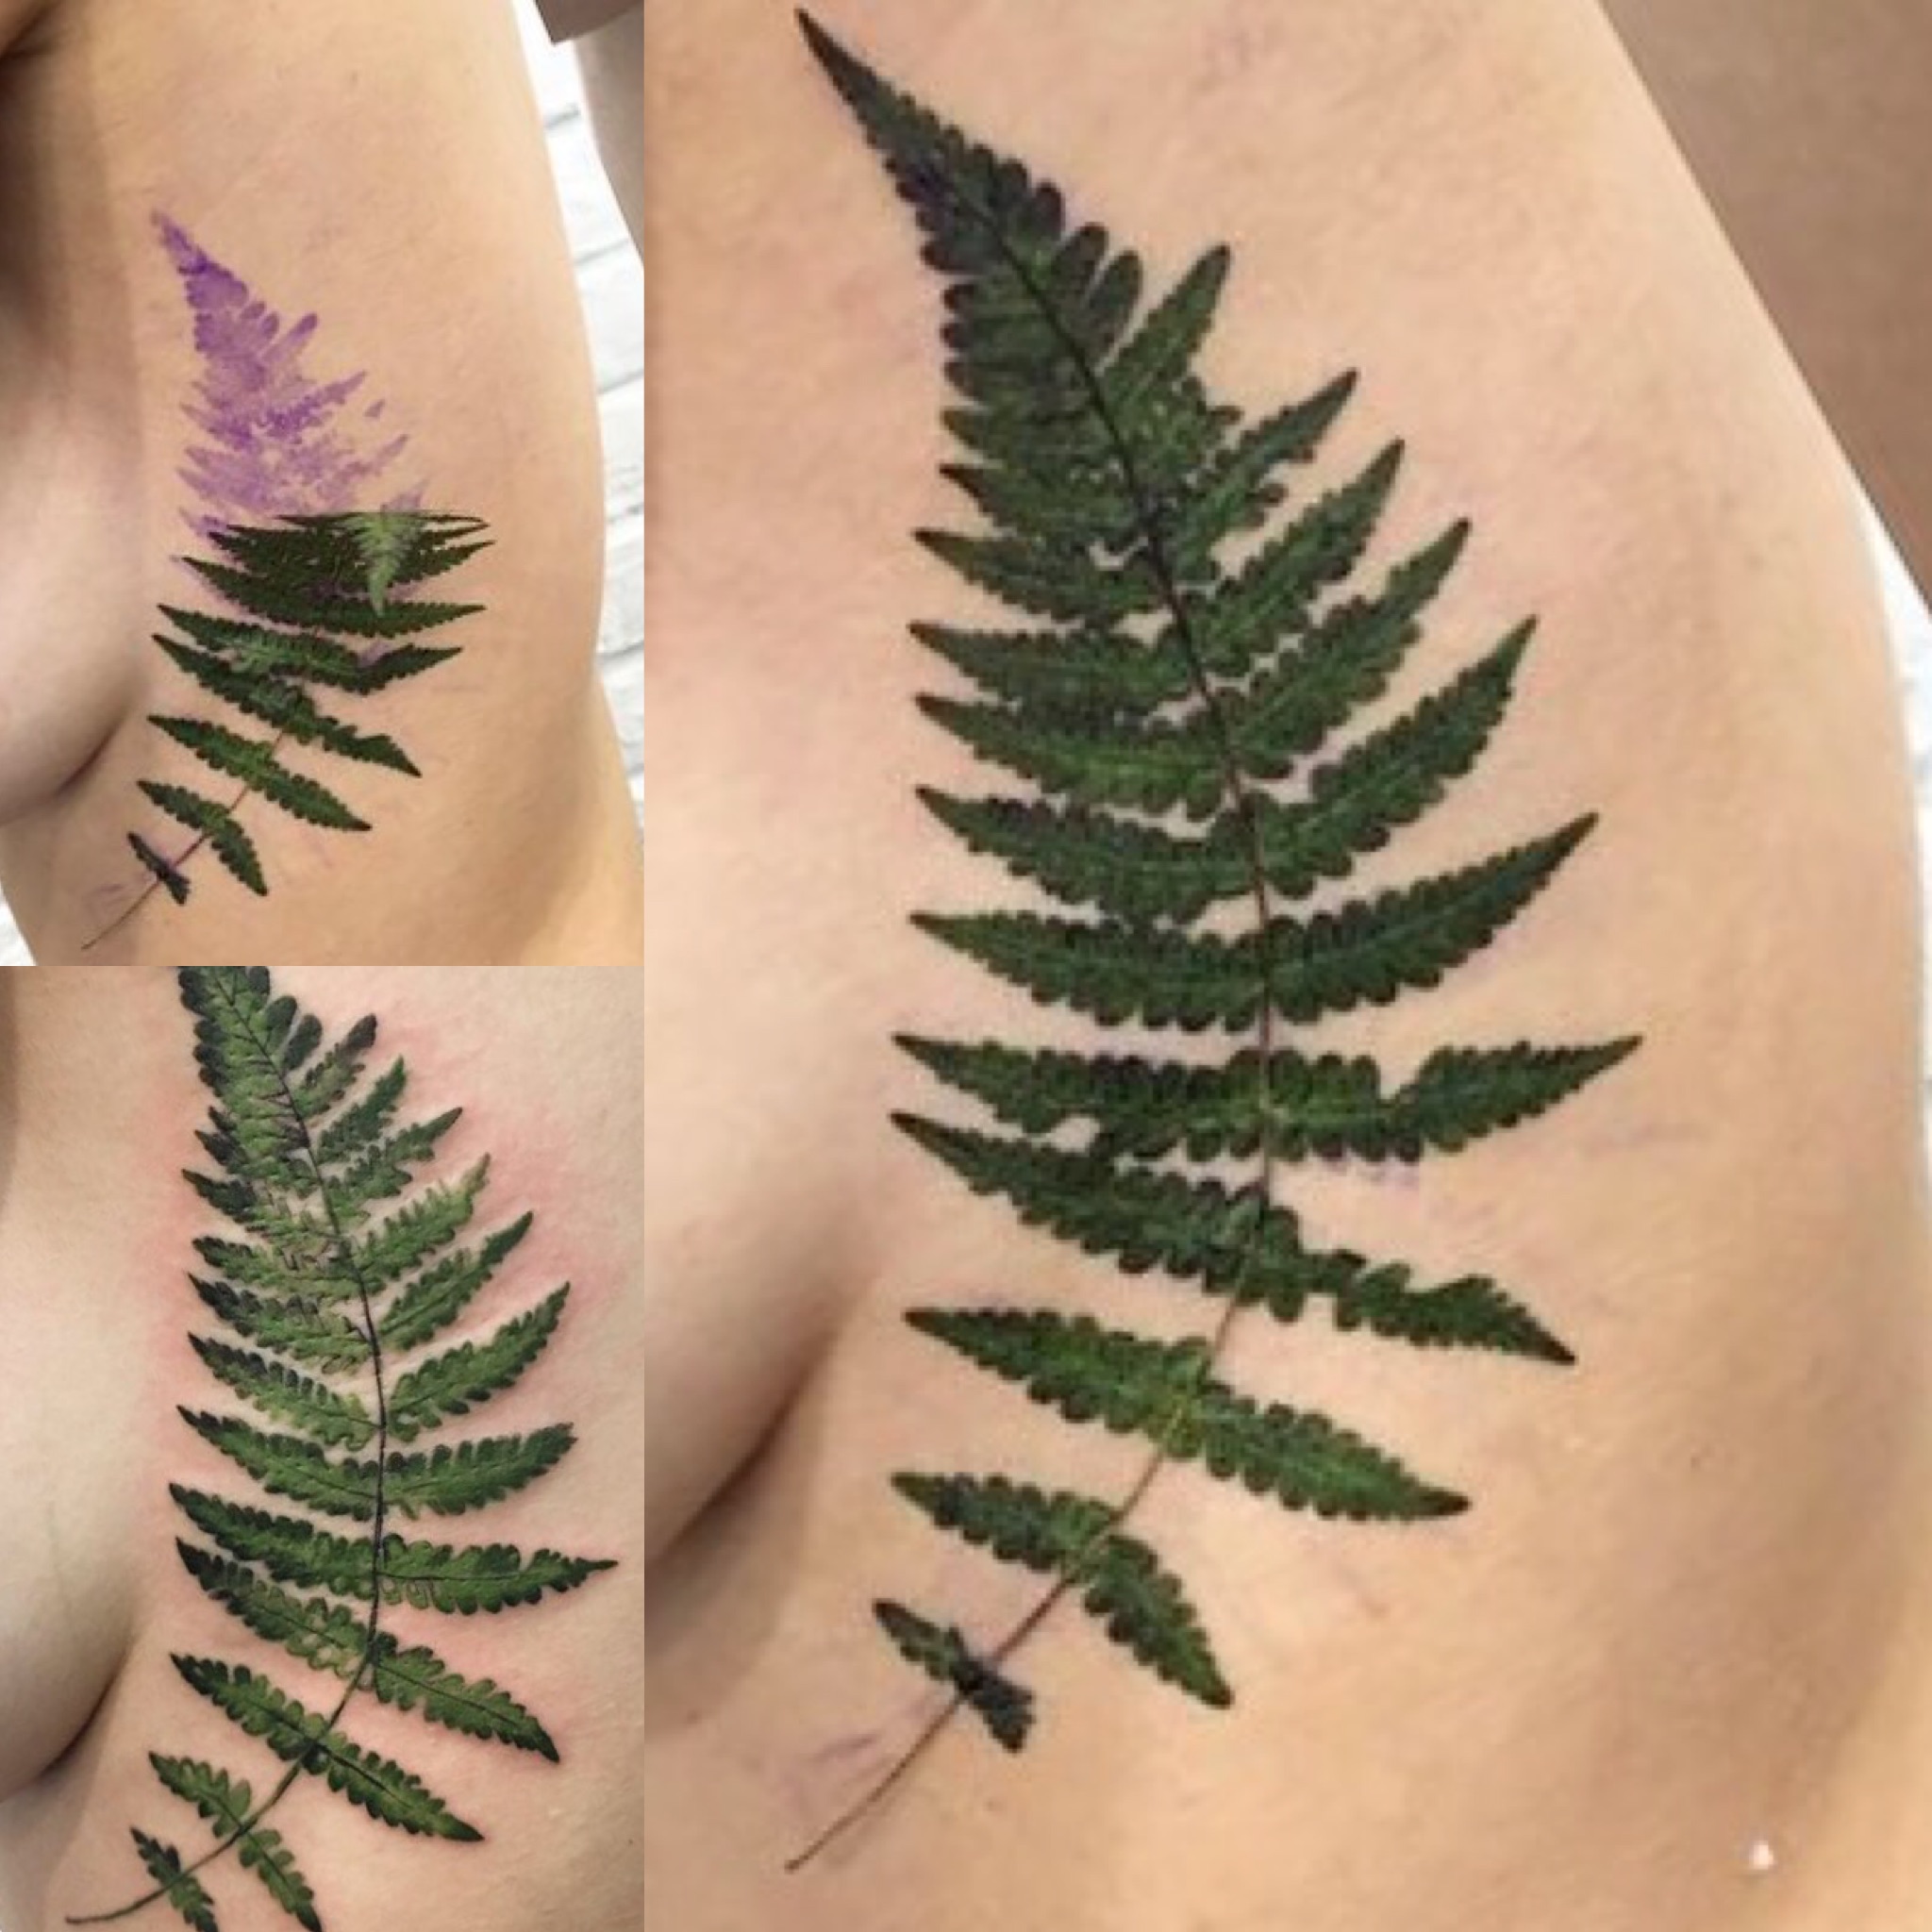 Artista del tatuaje floral